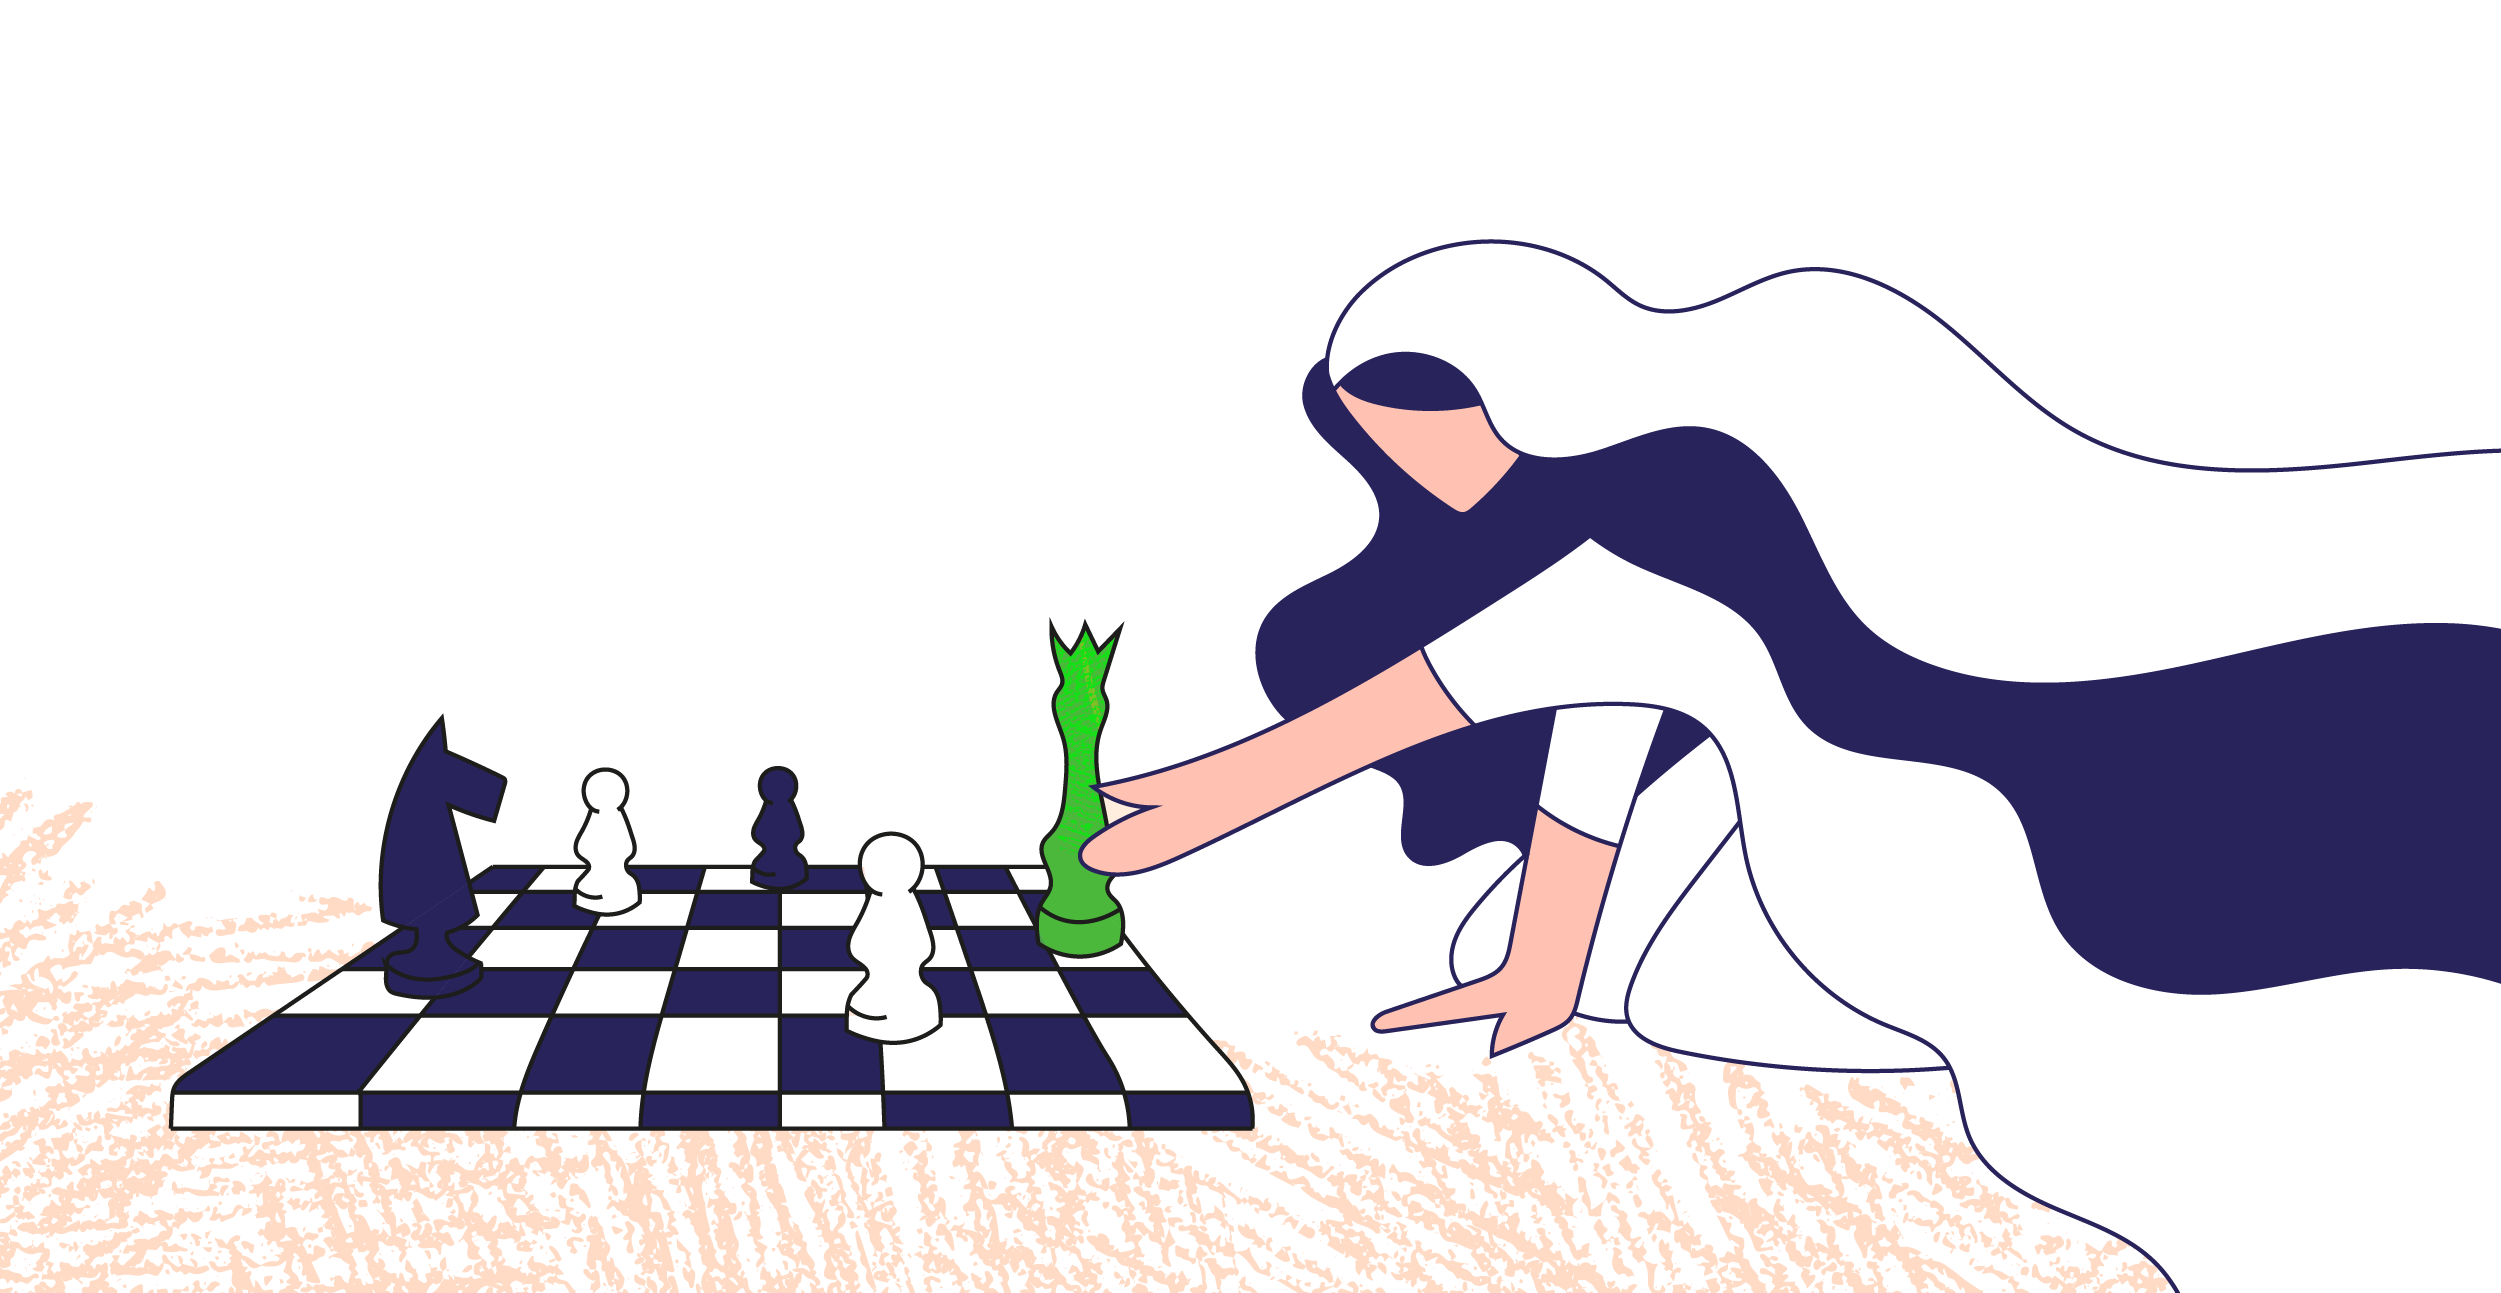 panna młoda przesuwa królową na szachownicy